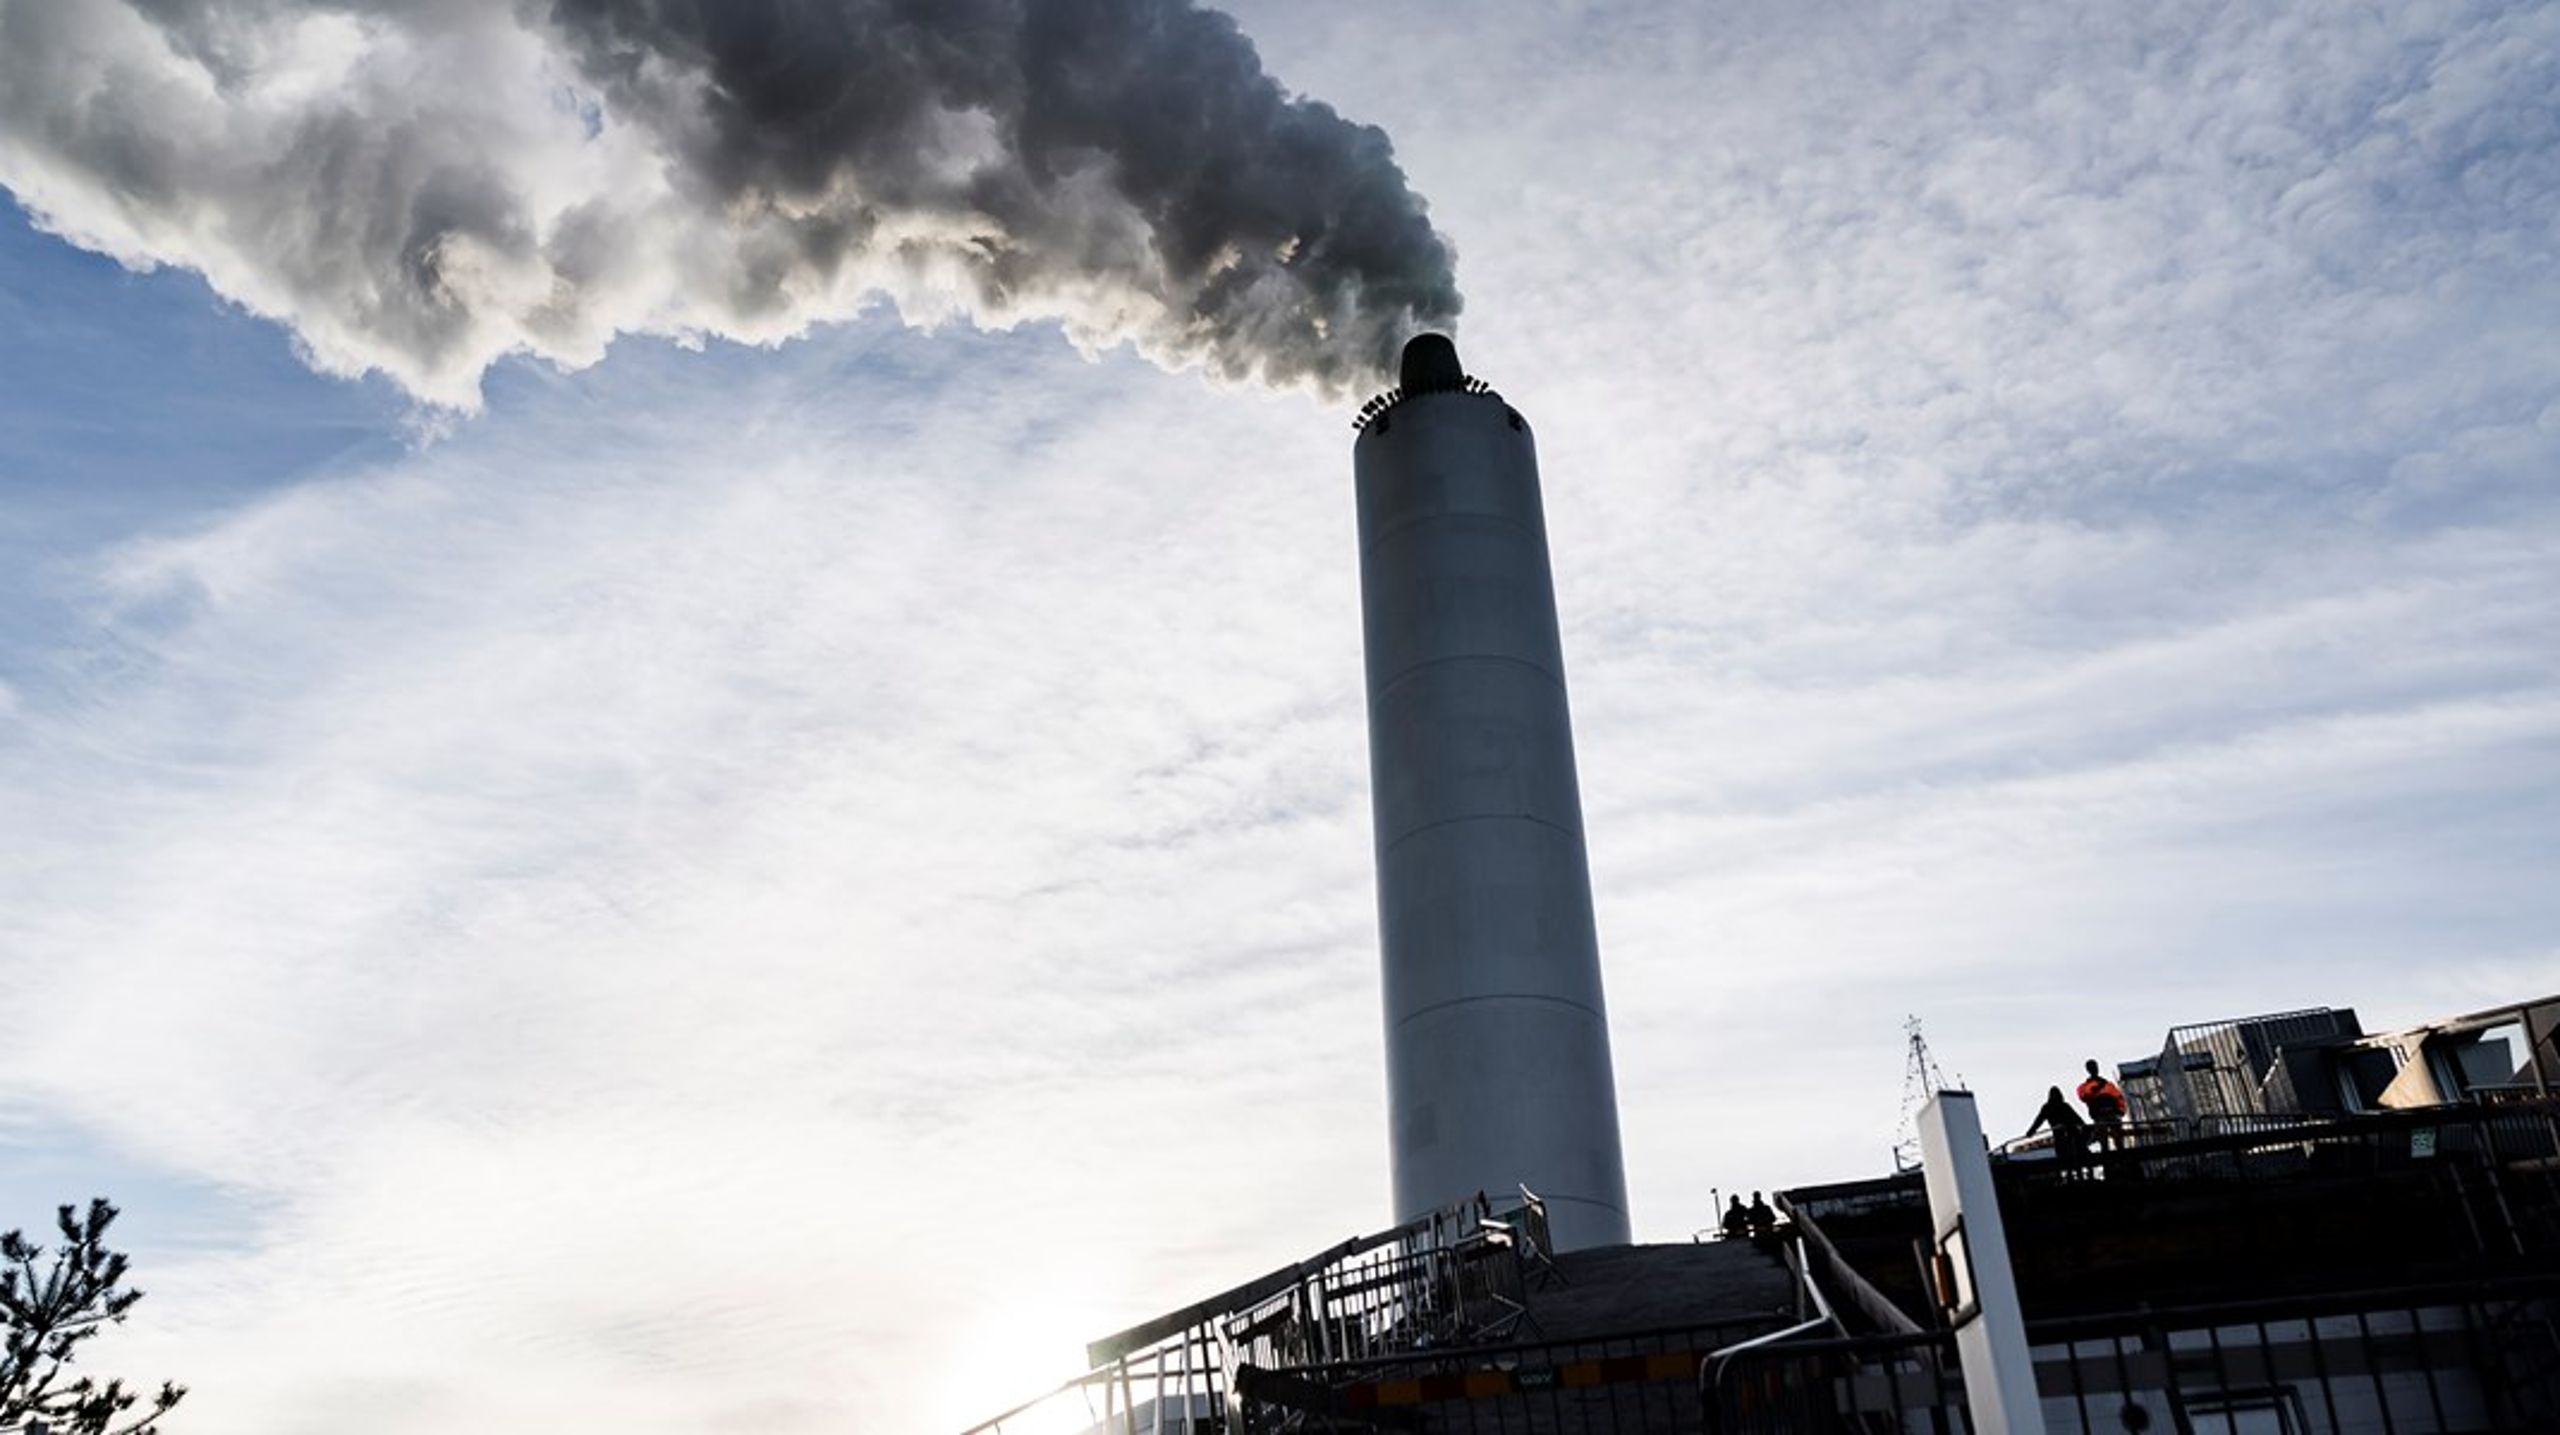 AffaldVarme Aarhus vil til foråret 2022 være med til at gøre Aarhus Kommune CO2-neutral og skifter derfor navn til Kredsløb for at sætte større fokus på deres klimatiltag.